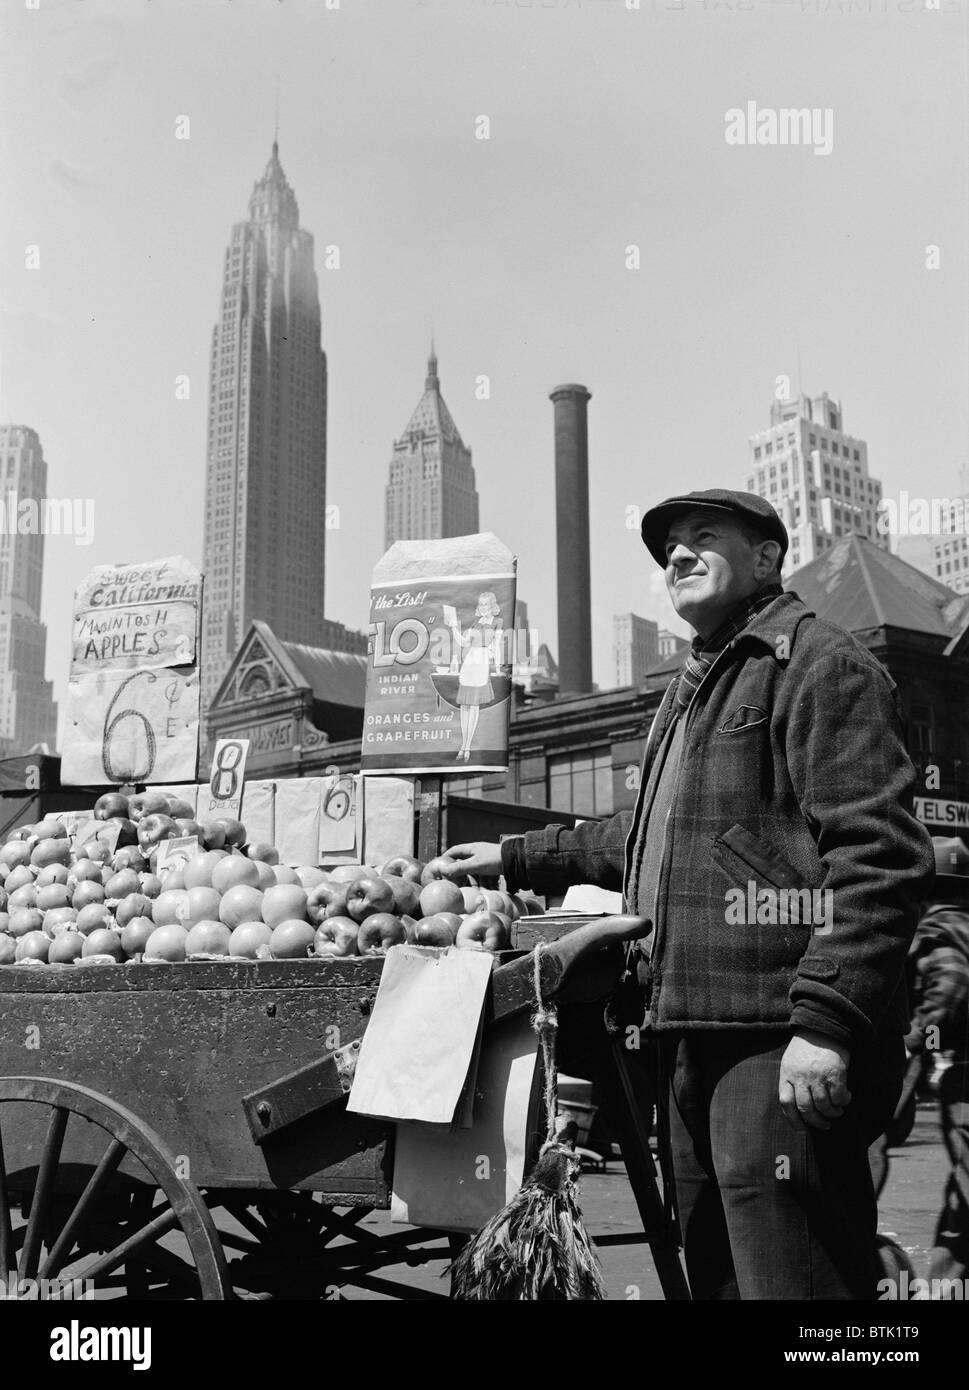 La città di New York, spingere il carrello fornitore di frutta al Fulton Fish market, fotografia di Gordon parchi, Maggio 1943 Foto Stock